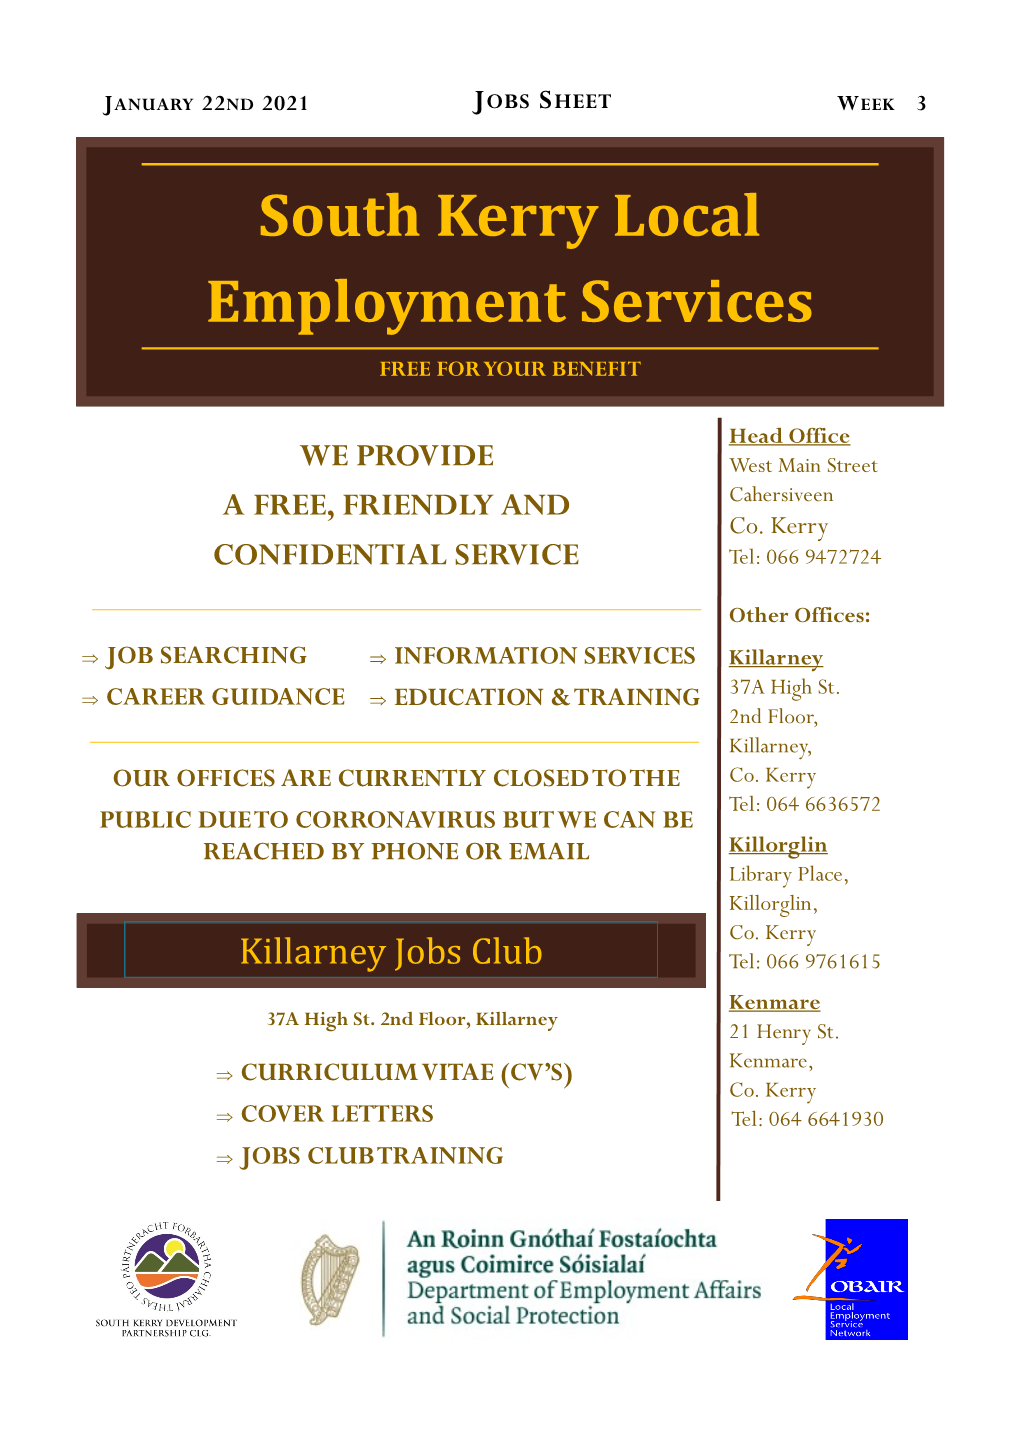 Jobs Sheet Week 3